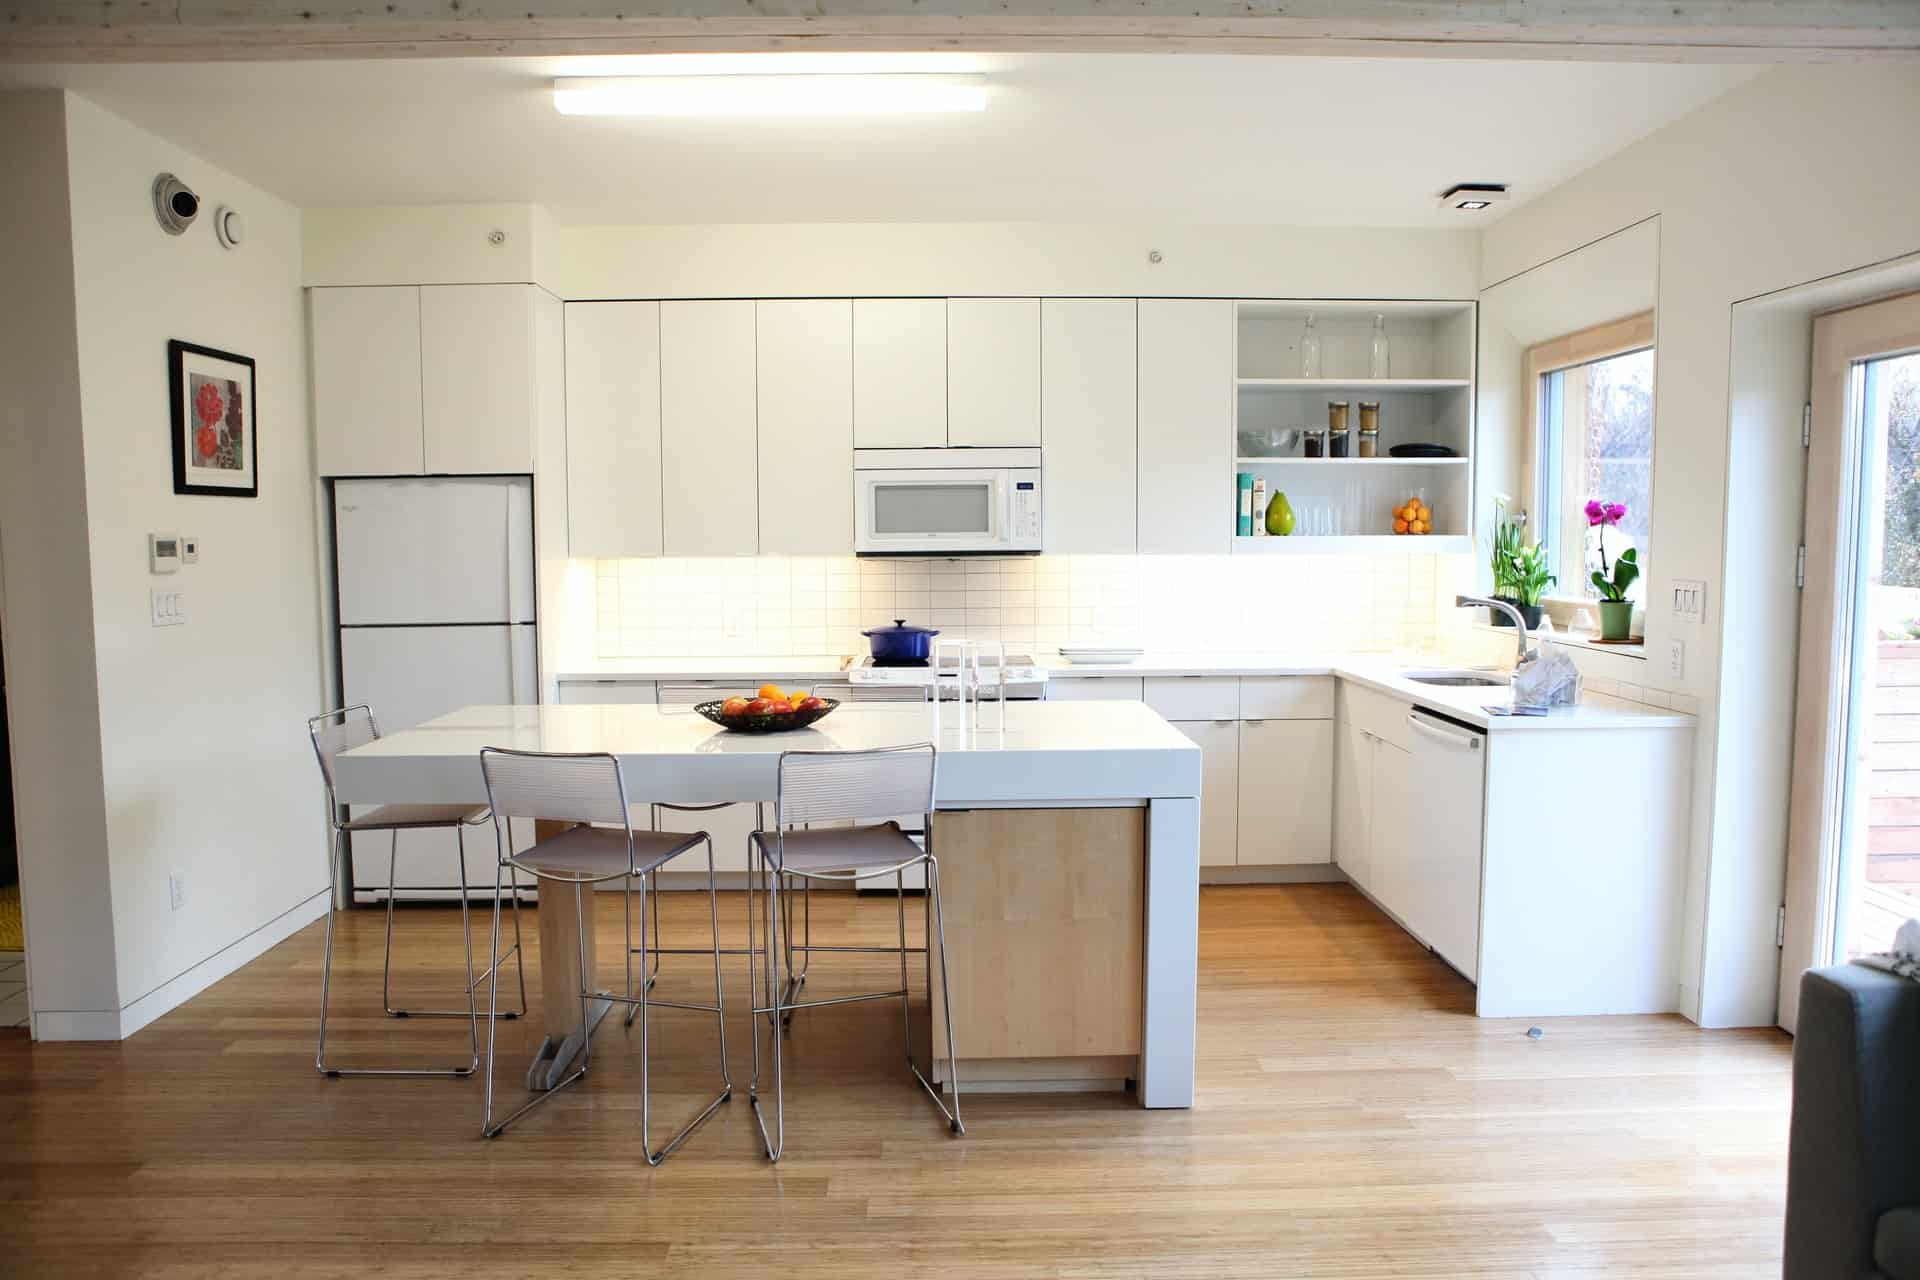 Wooden Floor Kitchen Nook kitchen nook ideas